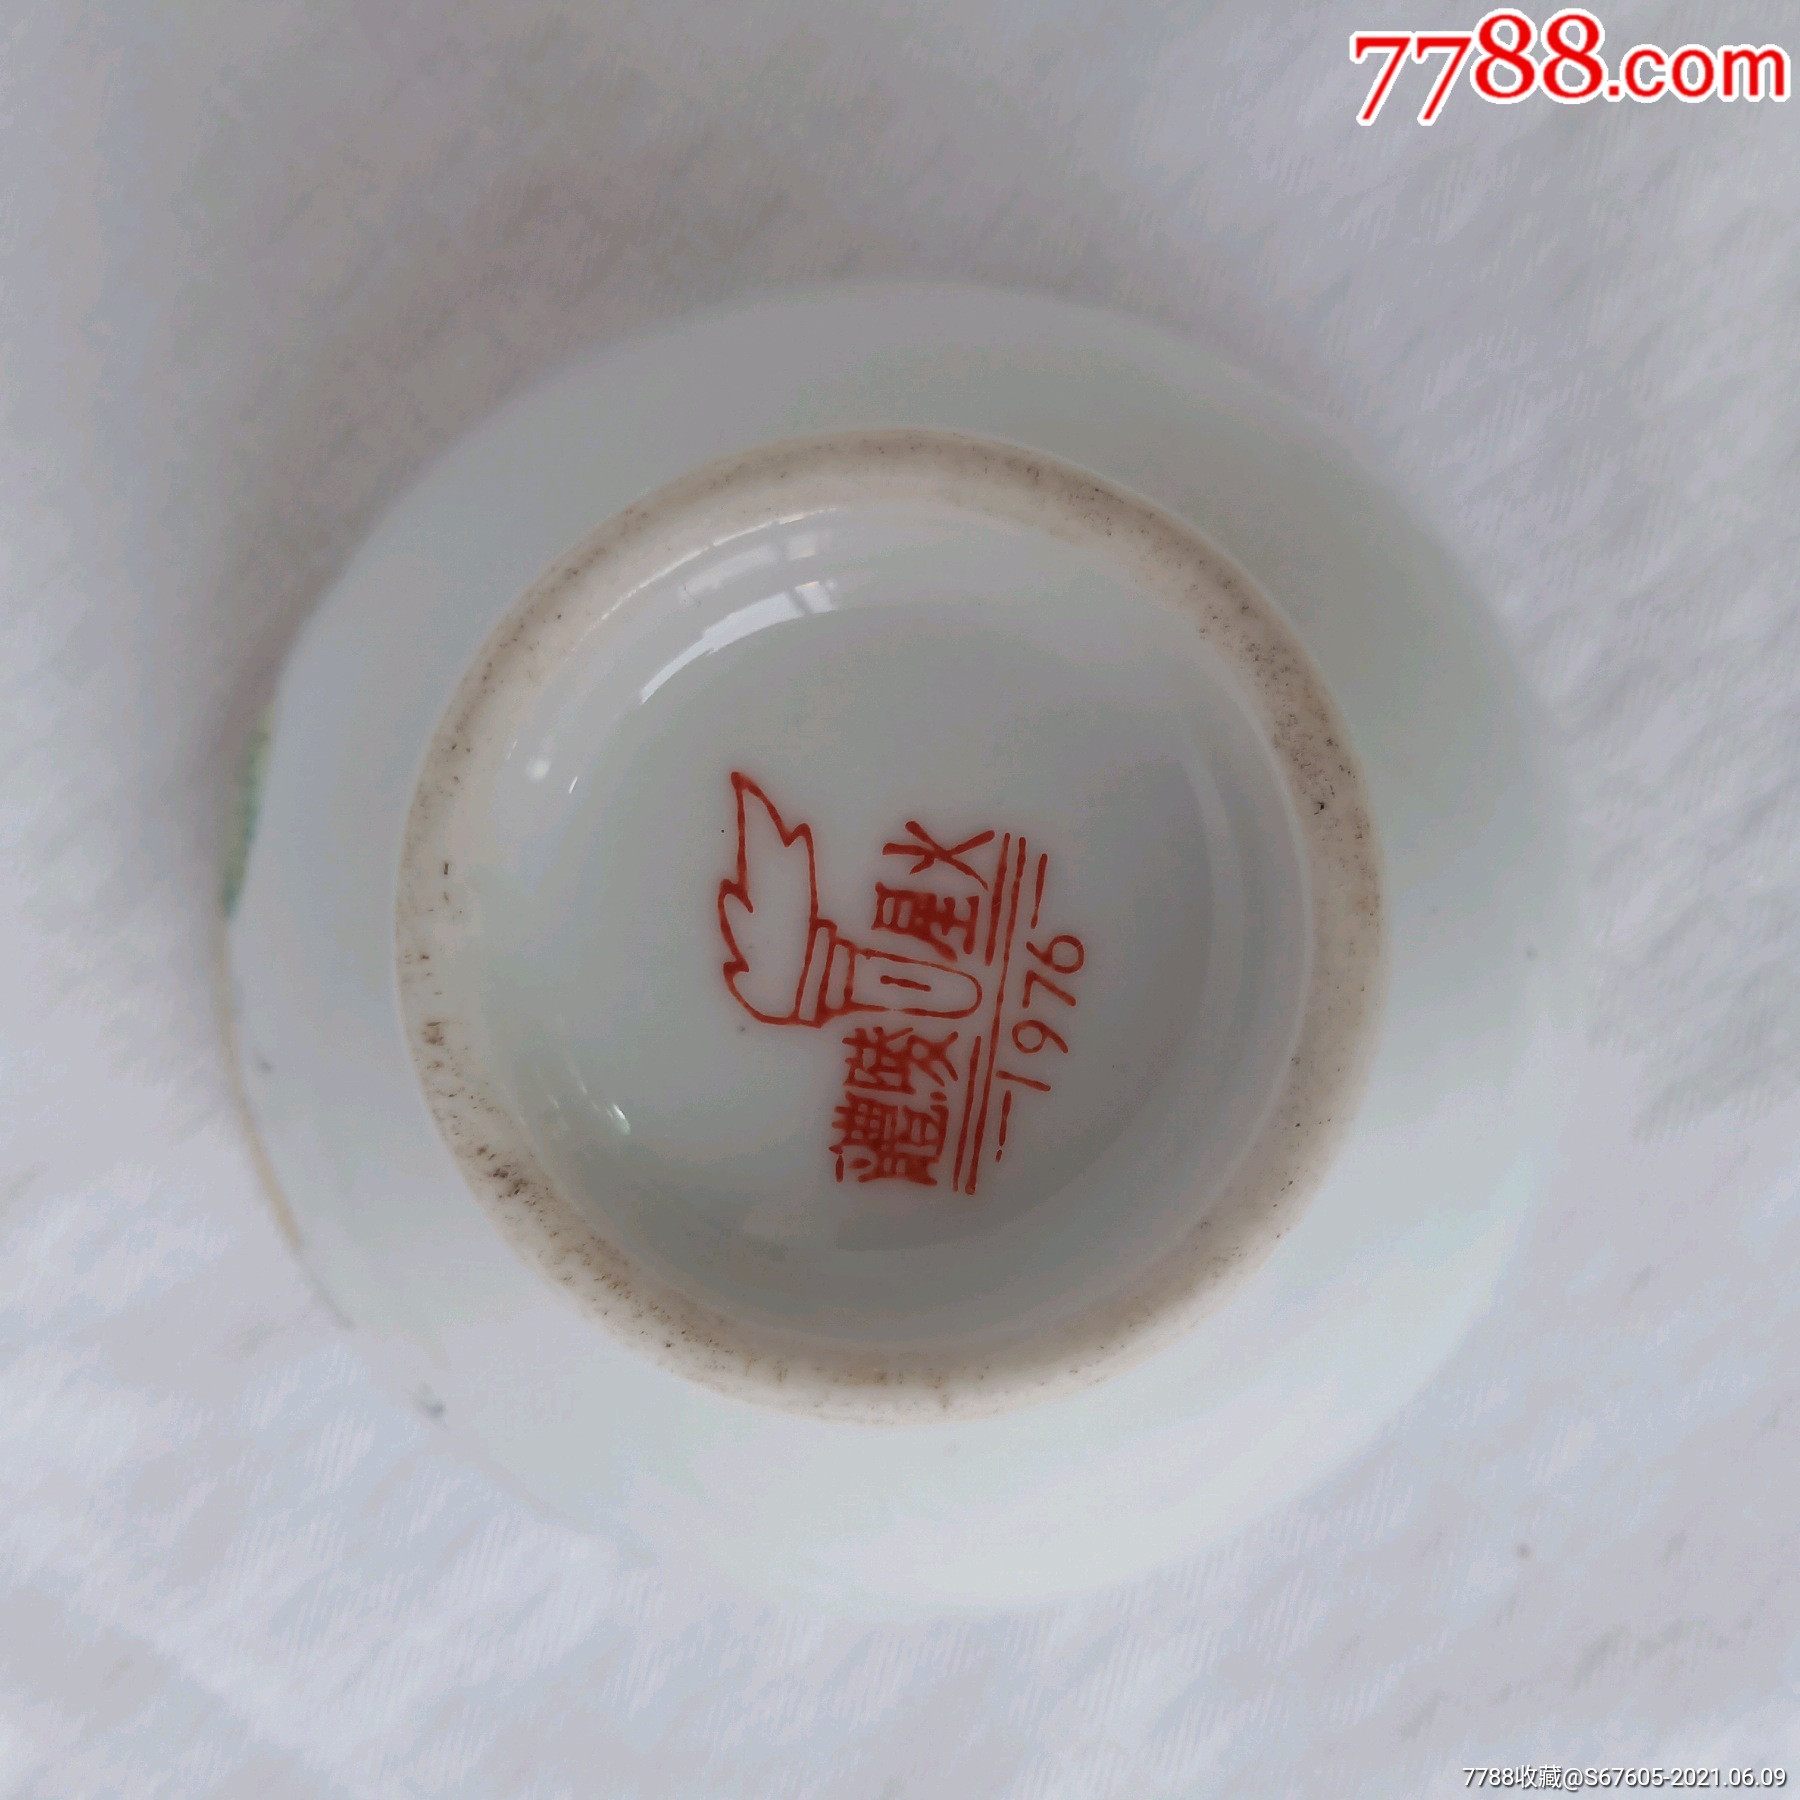 醴陵星火底款76年瓷碗